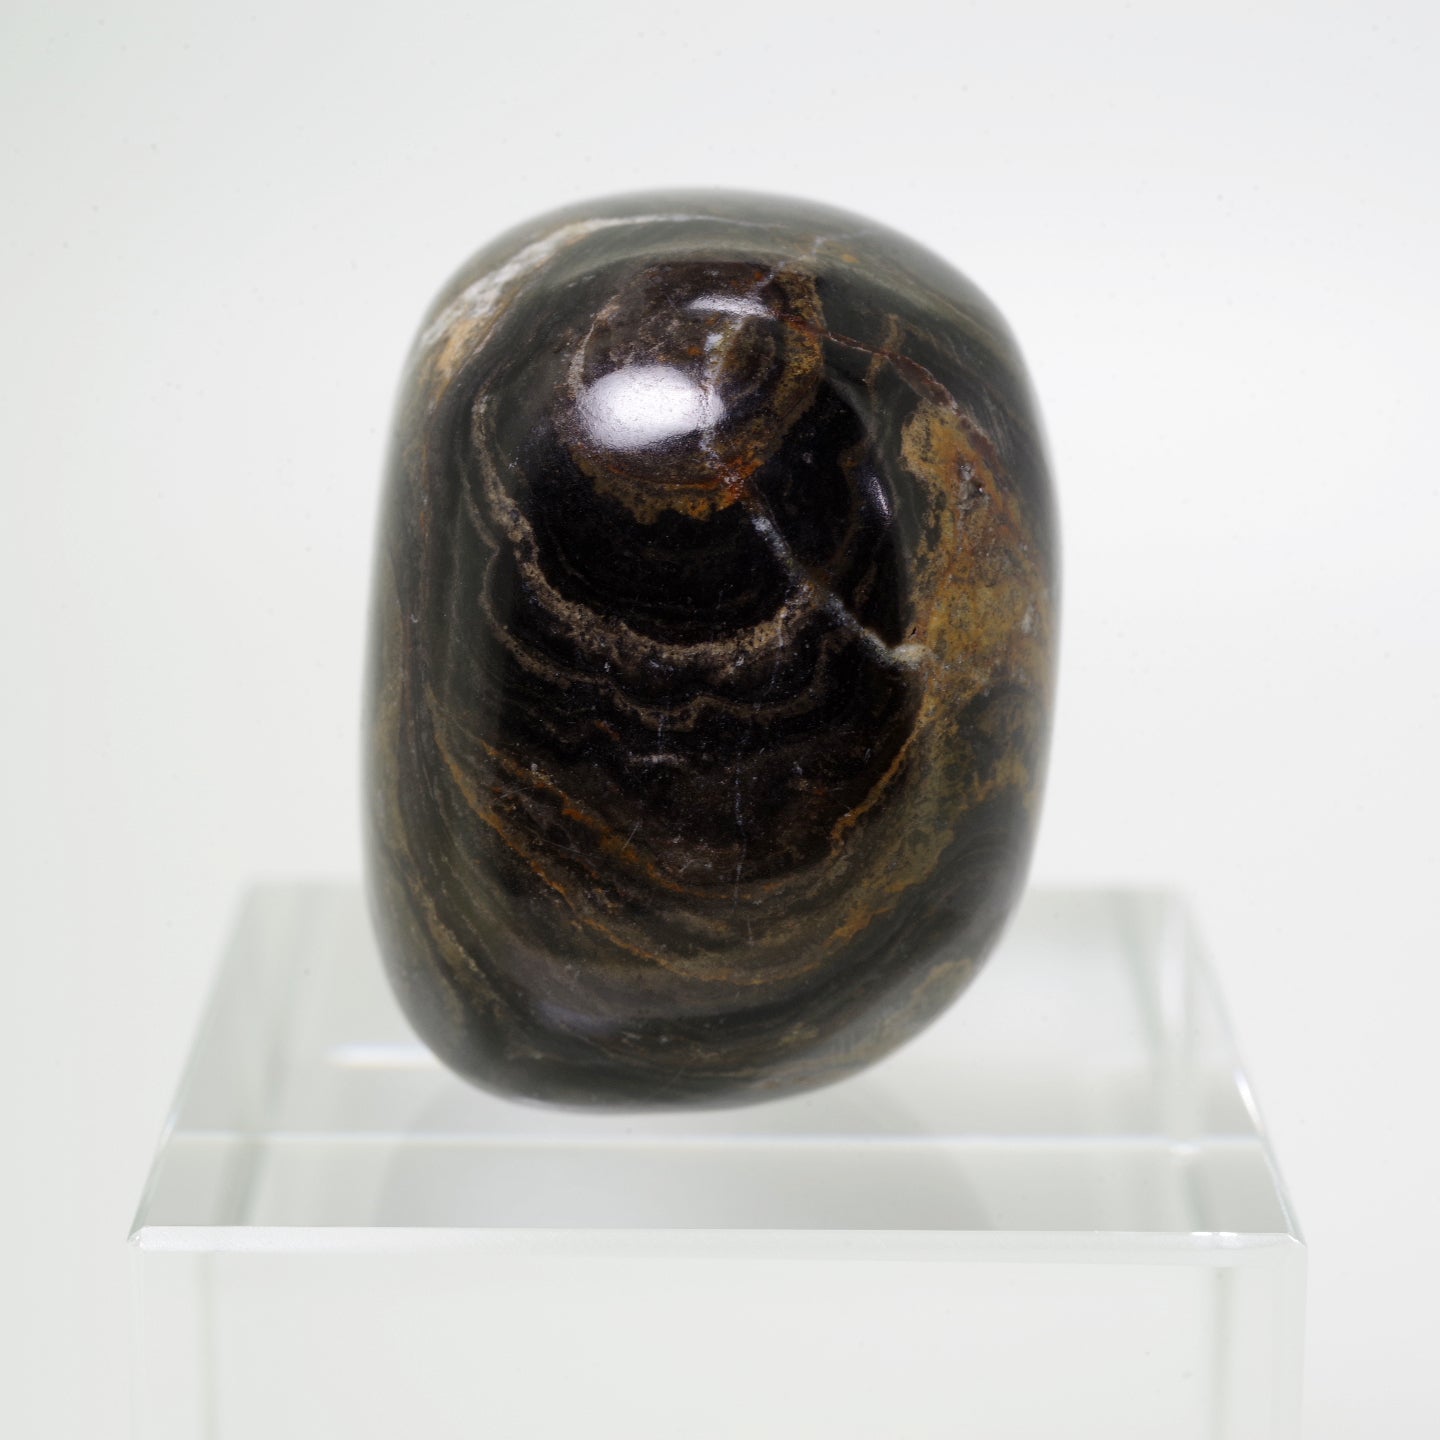 ストロマトライト2 ボリビア産  Stromatolite Bolivia 写真現物 動画あり